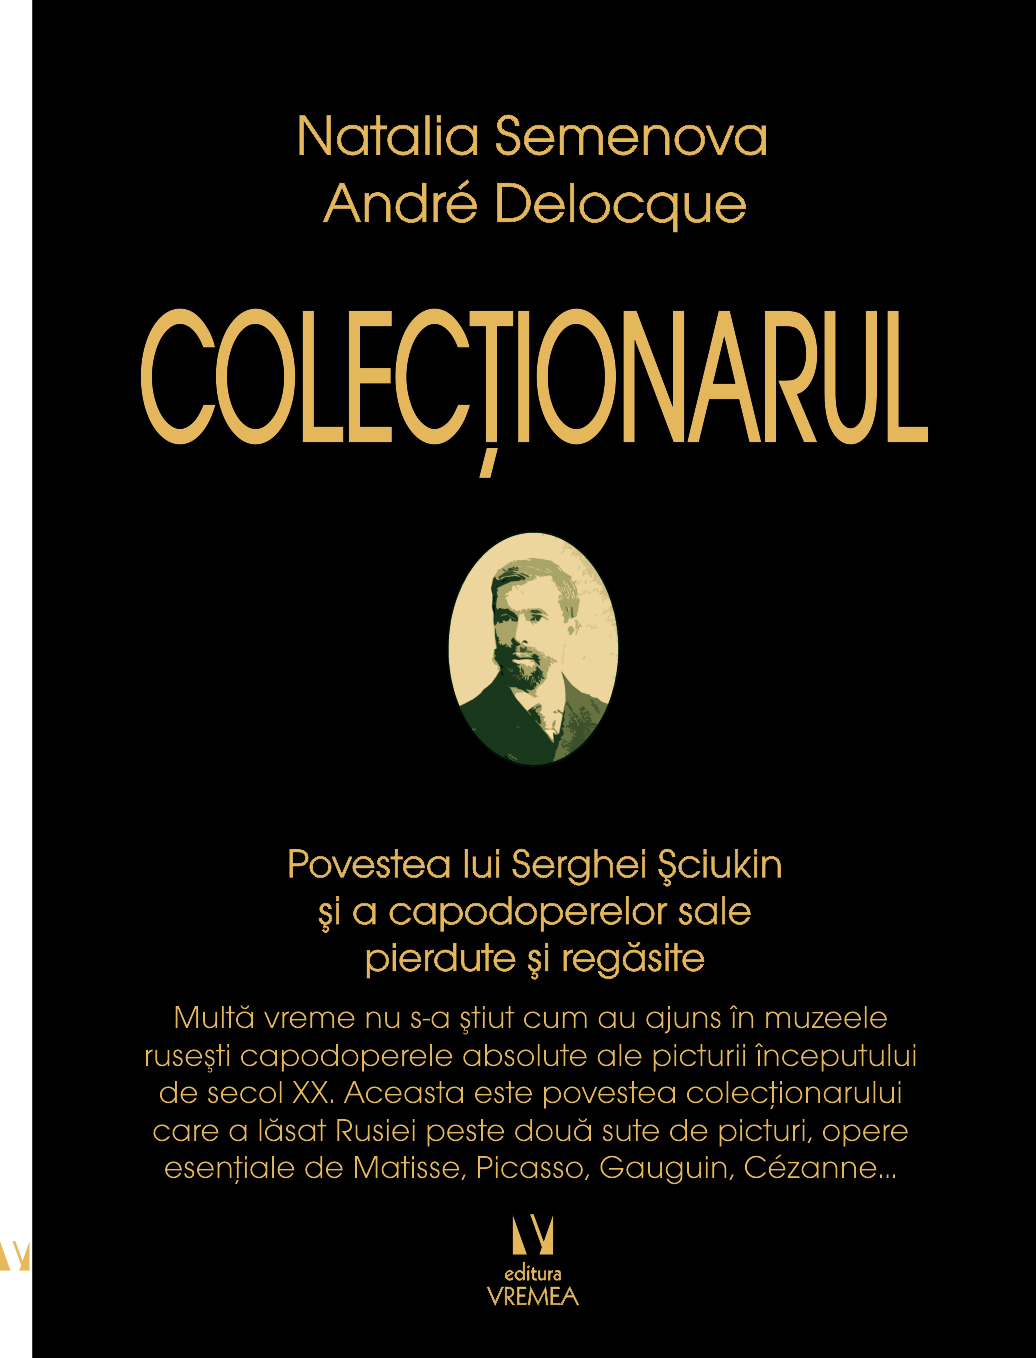 Colectionarul | Natalia Semenova, Andre Delocque Andre